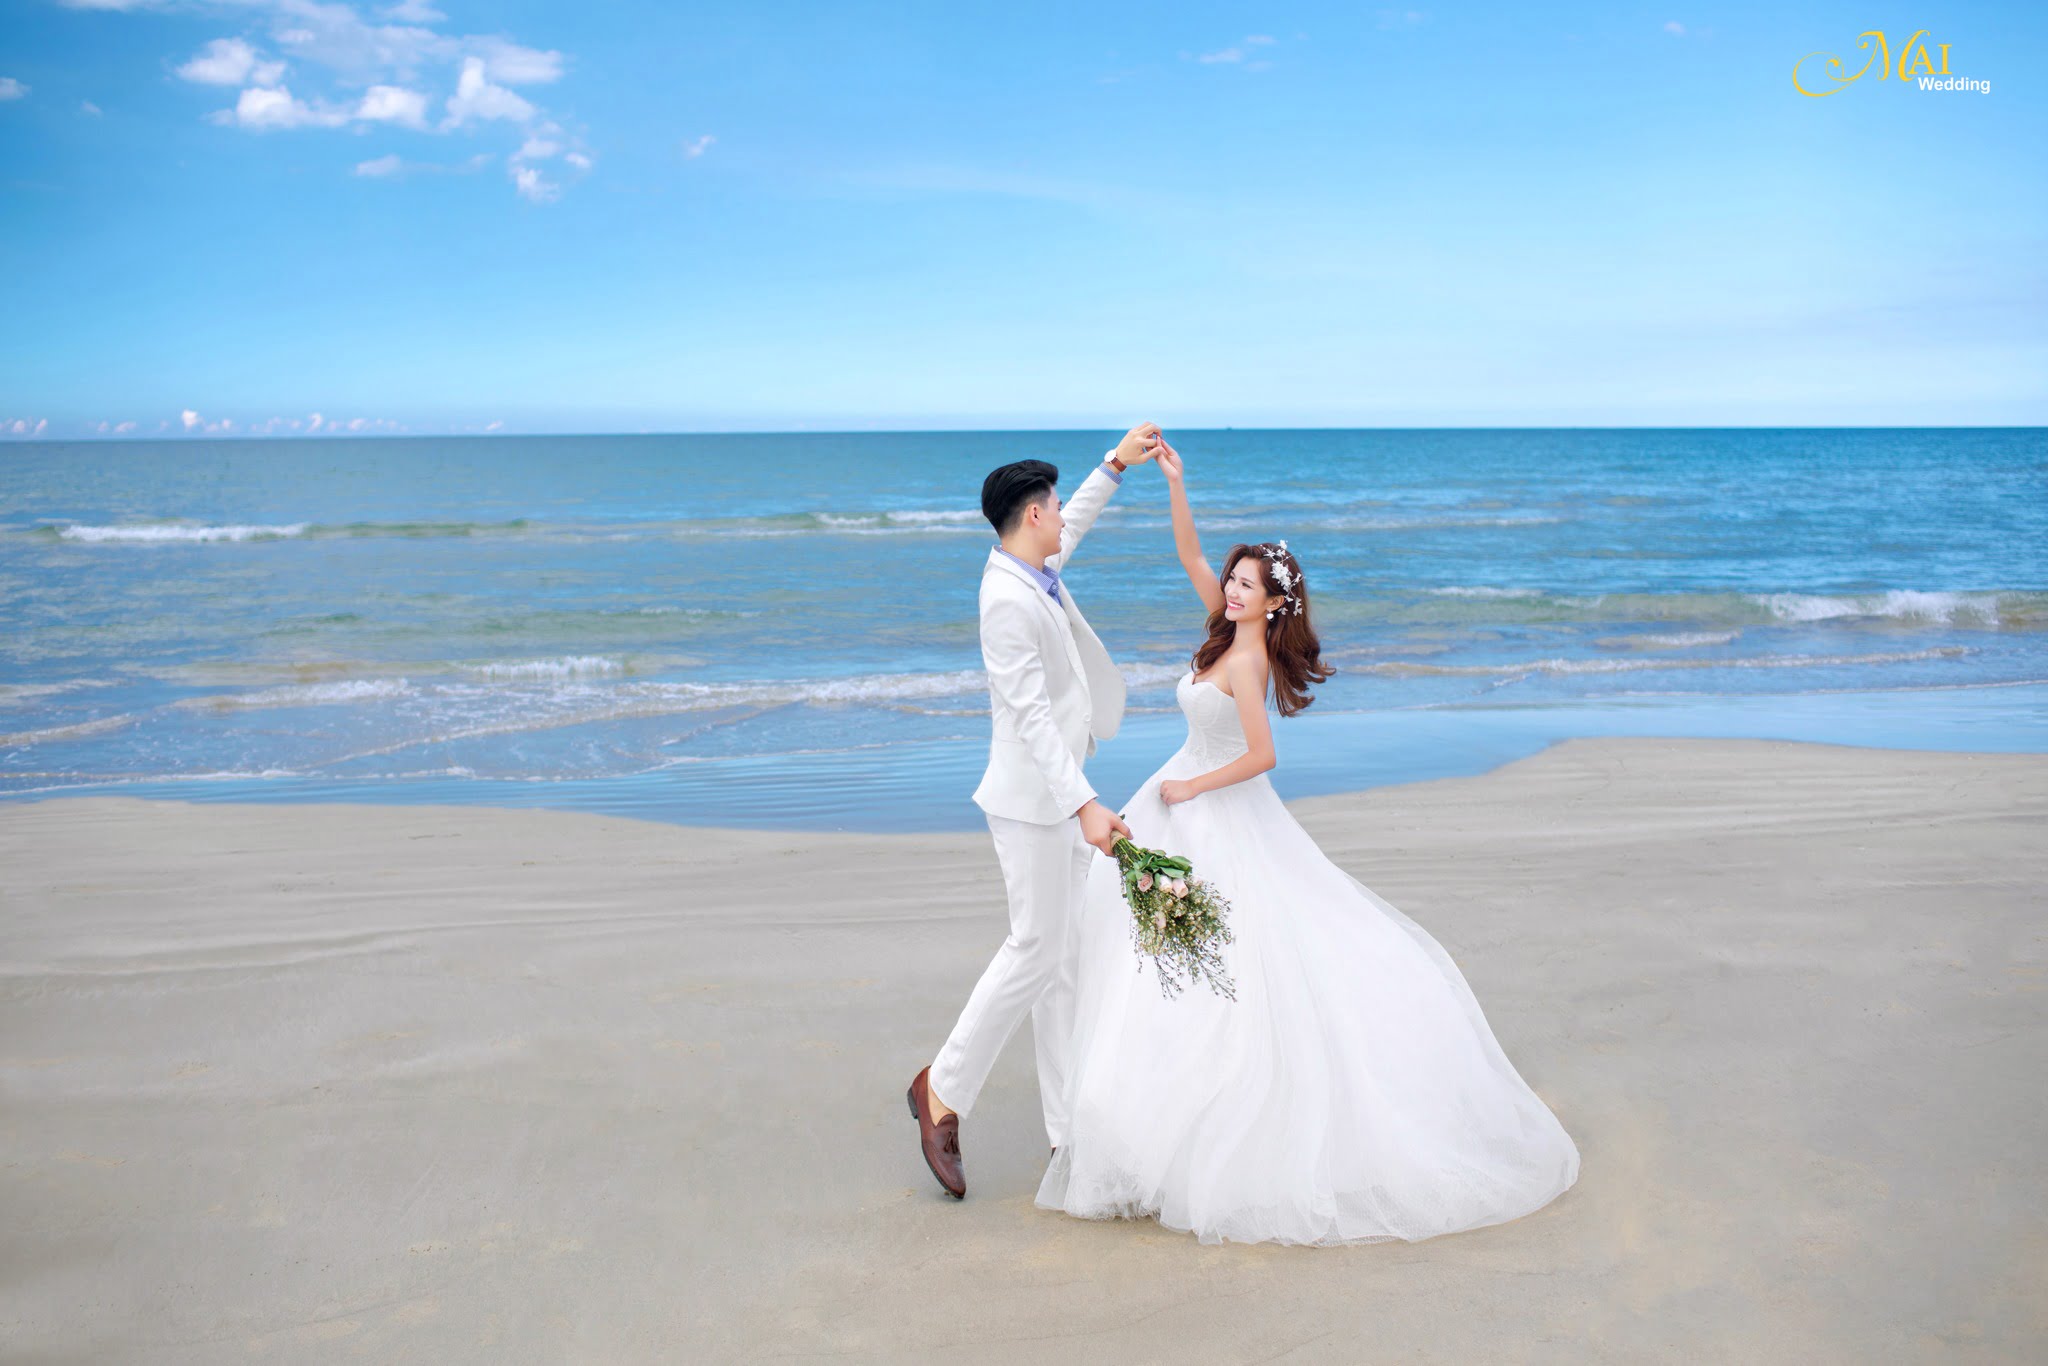 Hình cưới đẹp trên biển